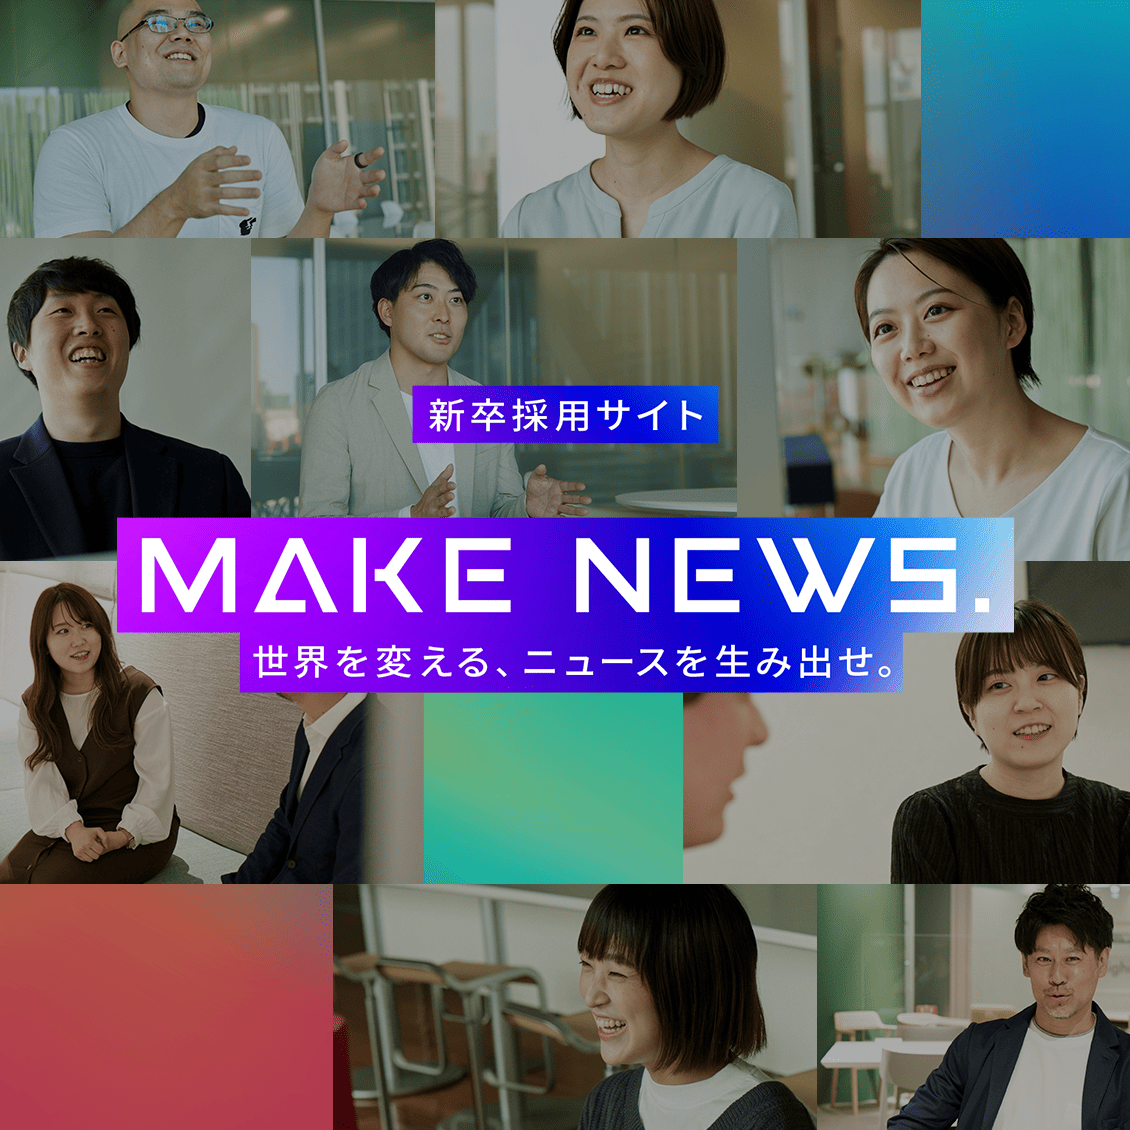 新卒採用サイト MAKE NEWS. 世界を変える、ニュースを生み出せ。